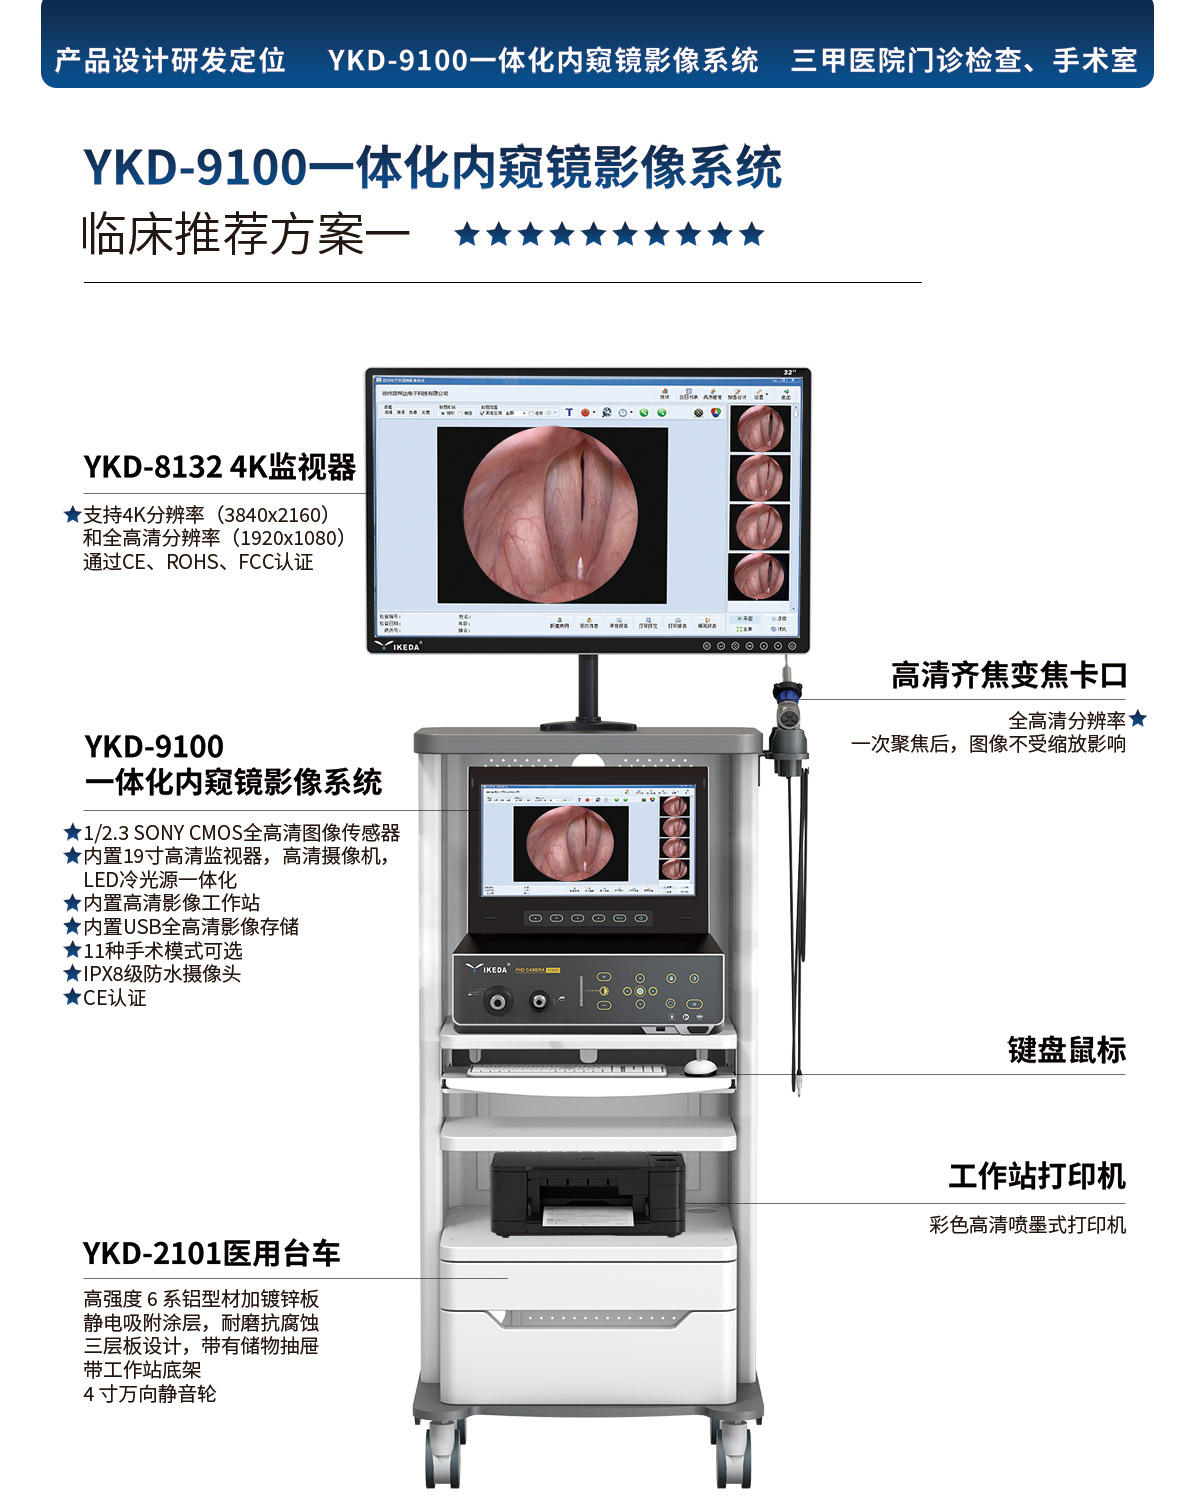 YKD-9100一体化内窥镜影像系统